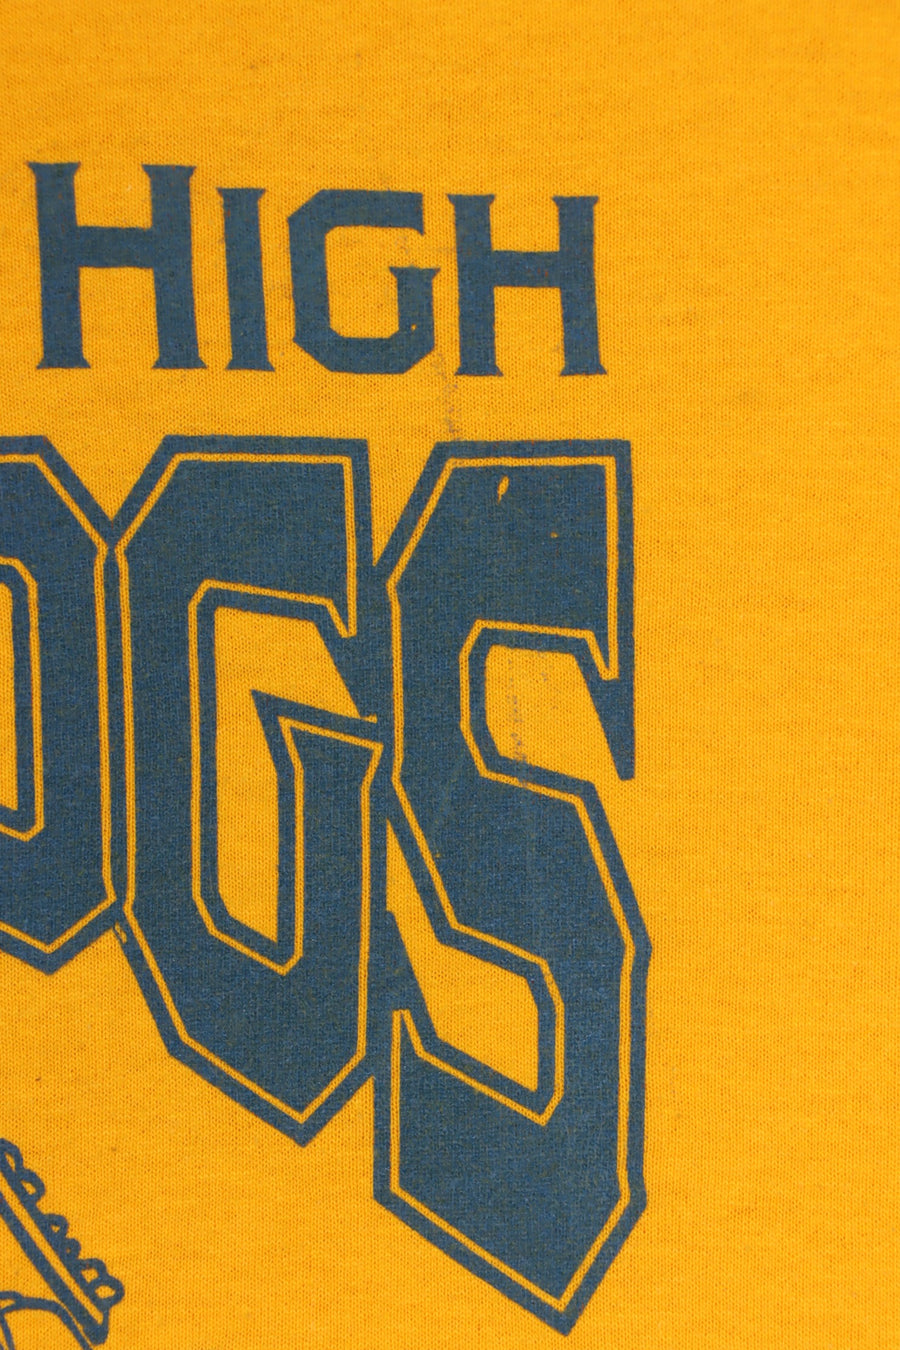 A.E. Beach High Bulldogs "We Run This City" T-Shirt (XL)